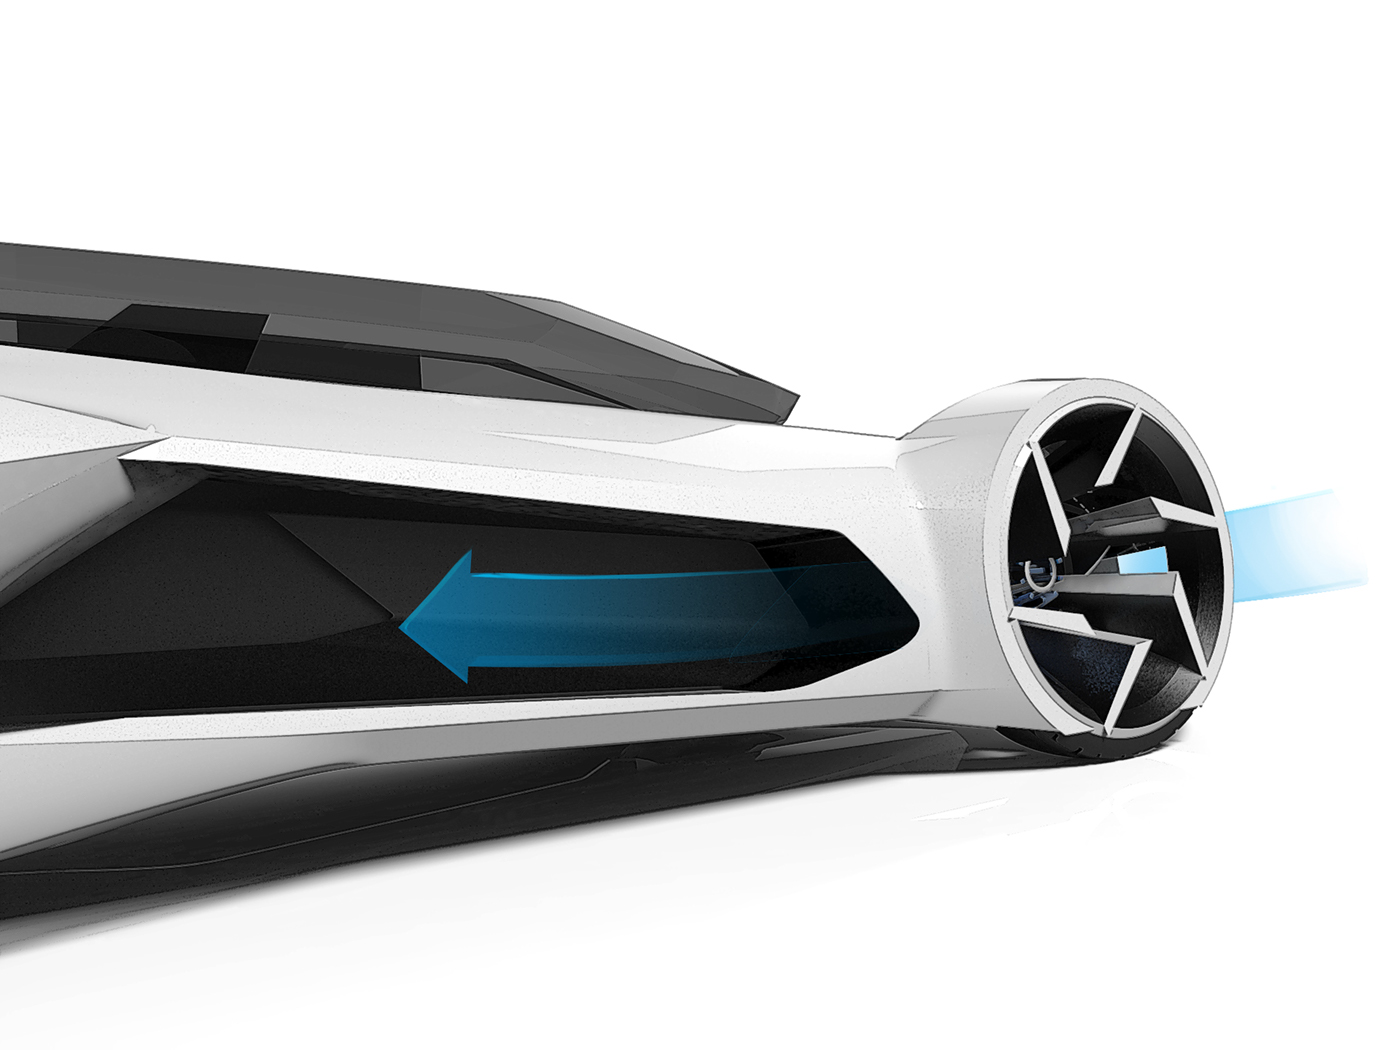 PEUGEOT car car design Automotive design Transportation Design concept concept car Autonomous